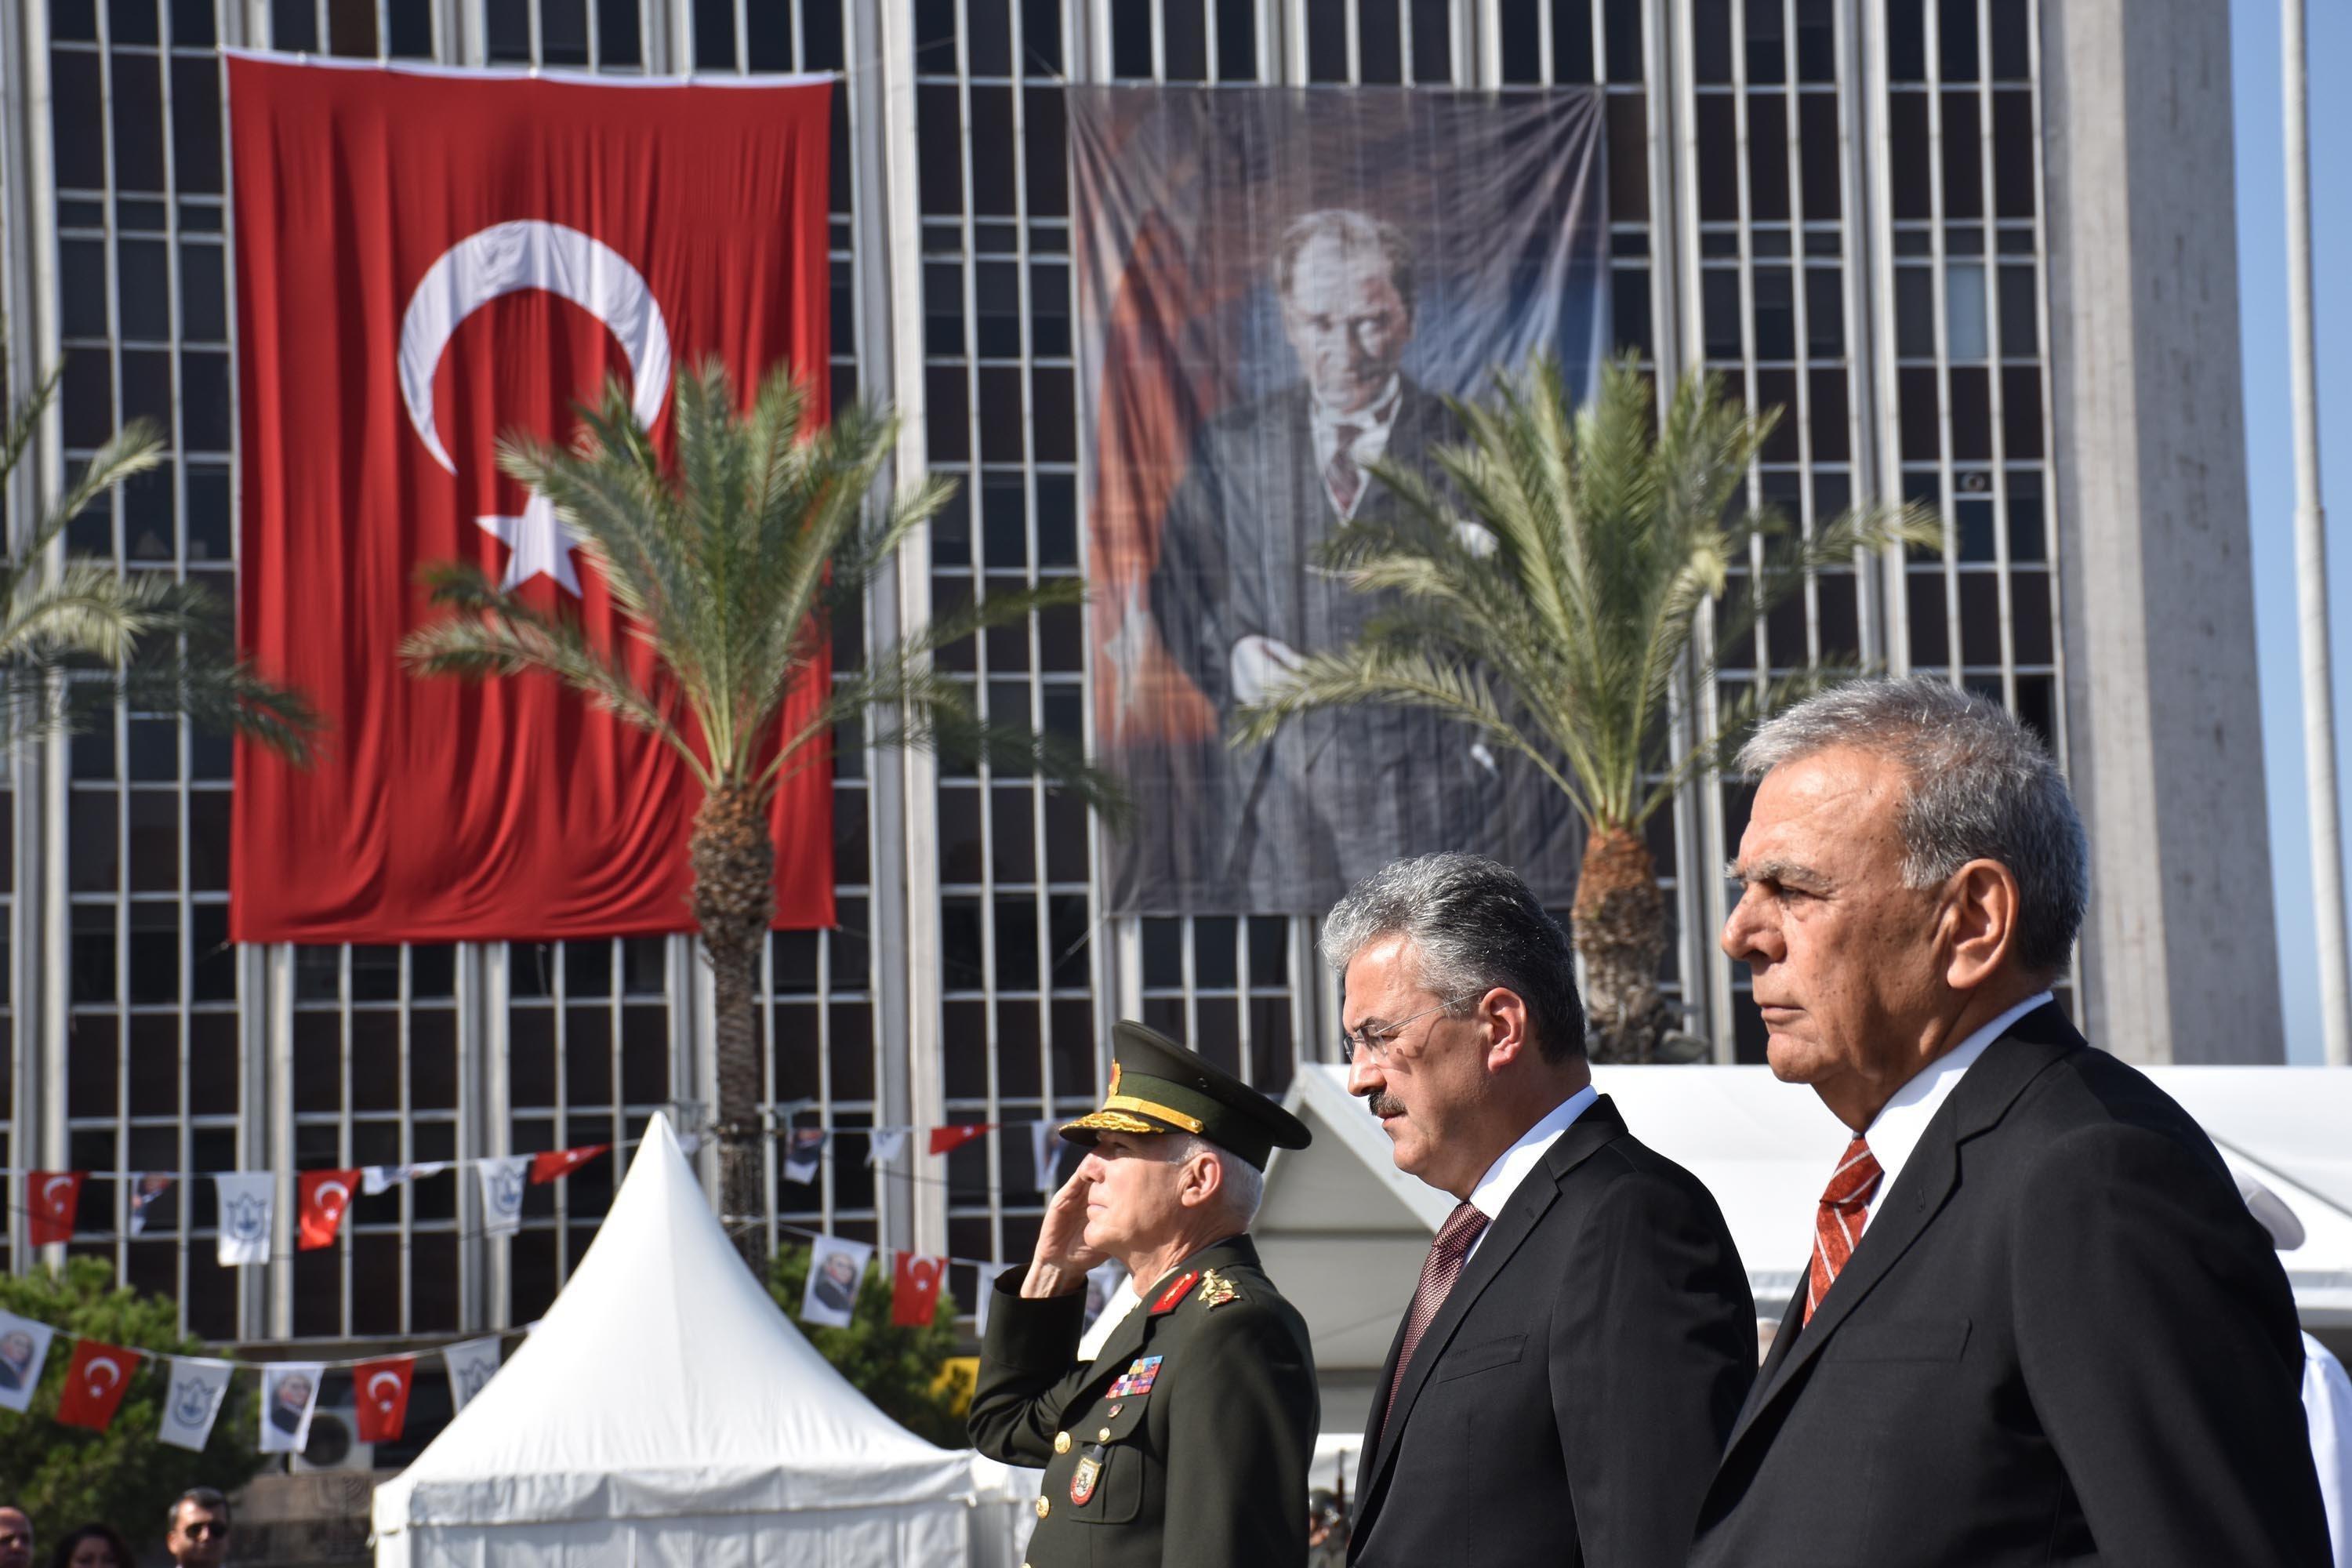 İzmir’in düşman işgalinden kurtuluşunun 95’inci yıldönümünde coşkulu kutlama